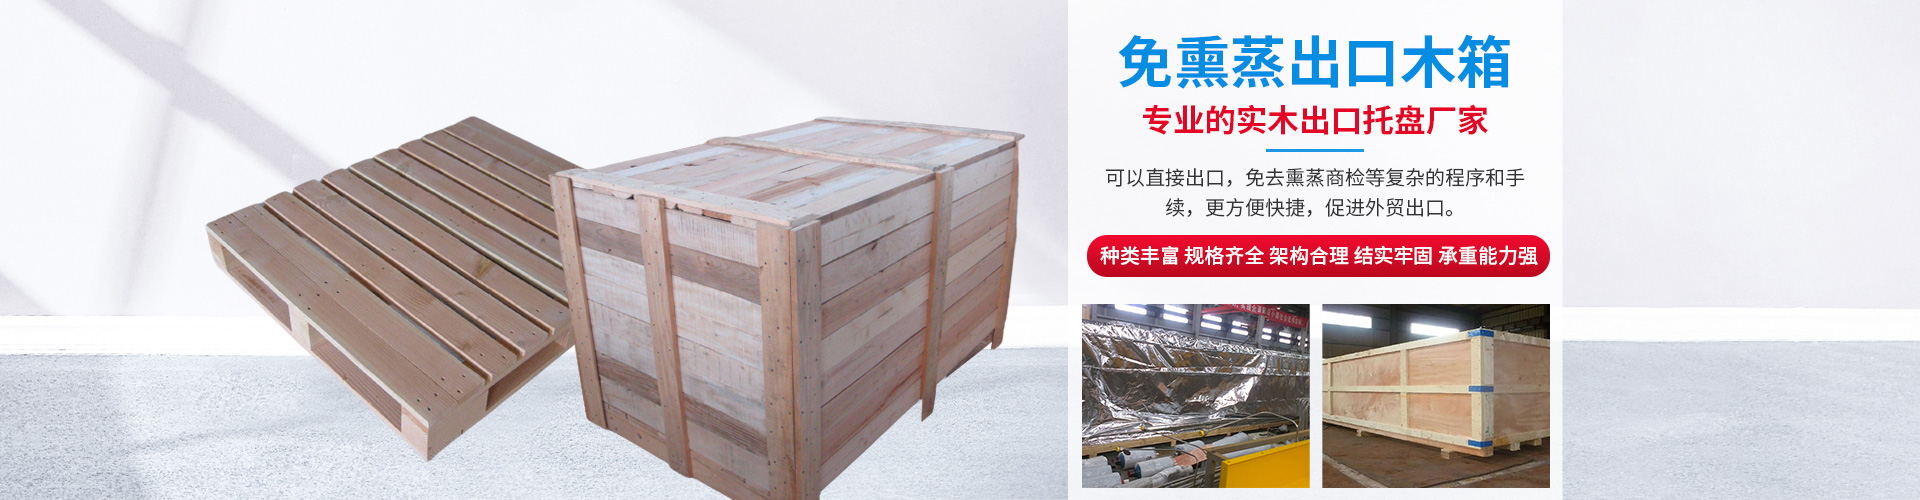 上海出口包装木箱 来电立享优惠-一承包装